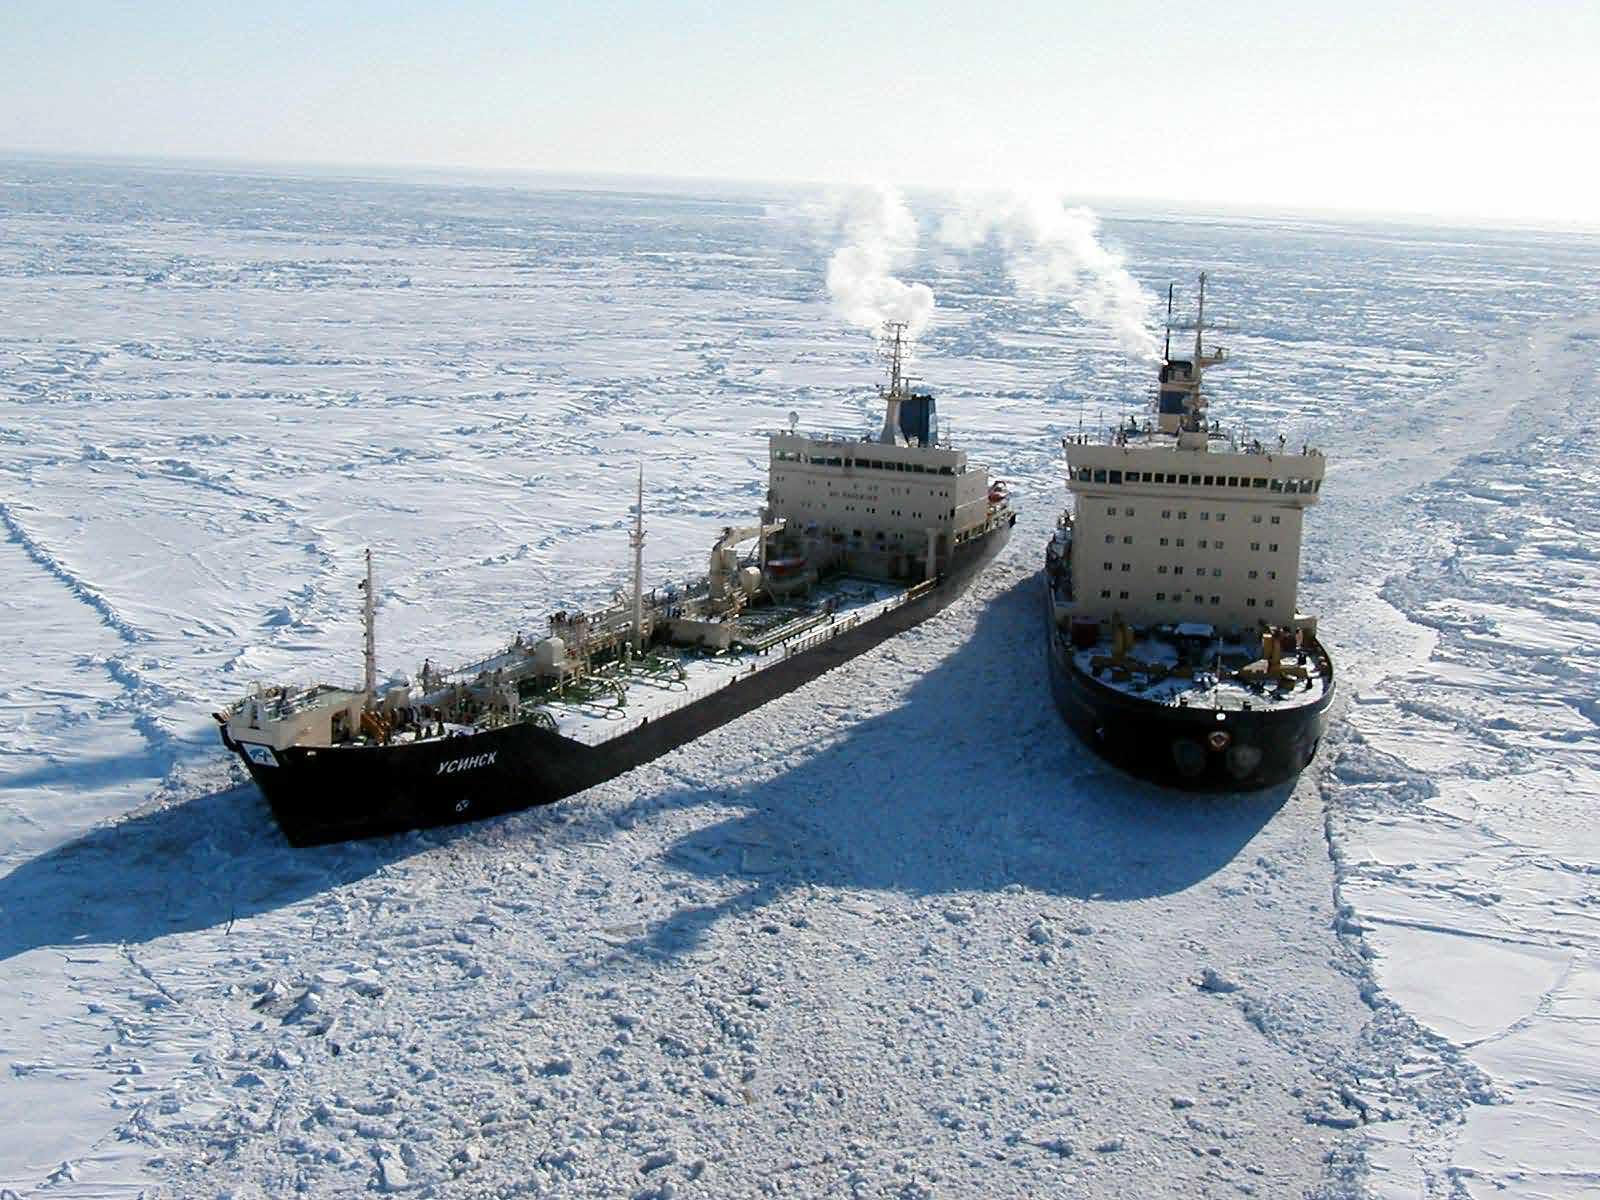 Морские порты ледовитого океана. Северный морской путь Севморпуть. Северный морской путь в Арктике. Лихтеровоз Севморпуть. Ледокол Севморпуть.